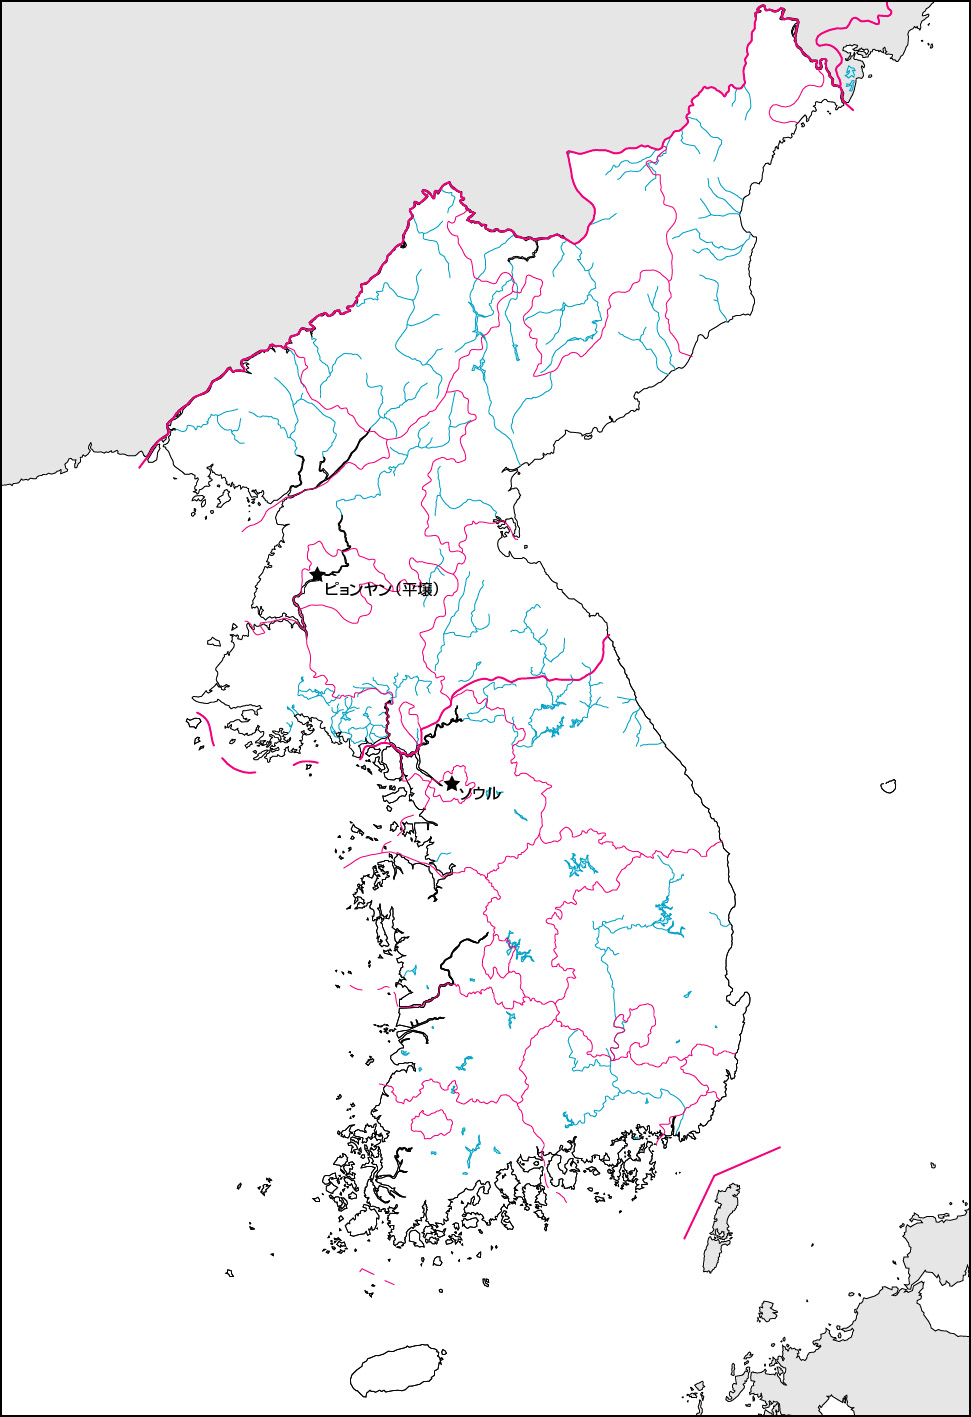 鮮半島白地図(行政区分・首都・国境記載)の画像